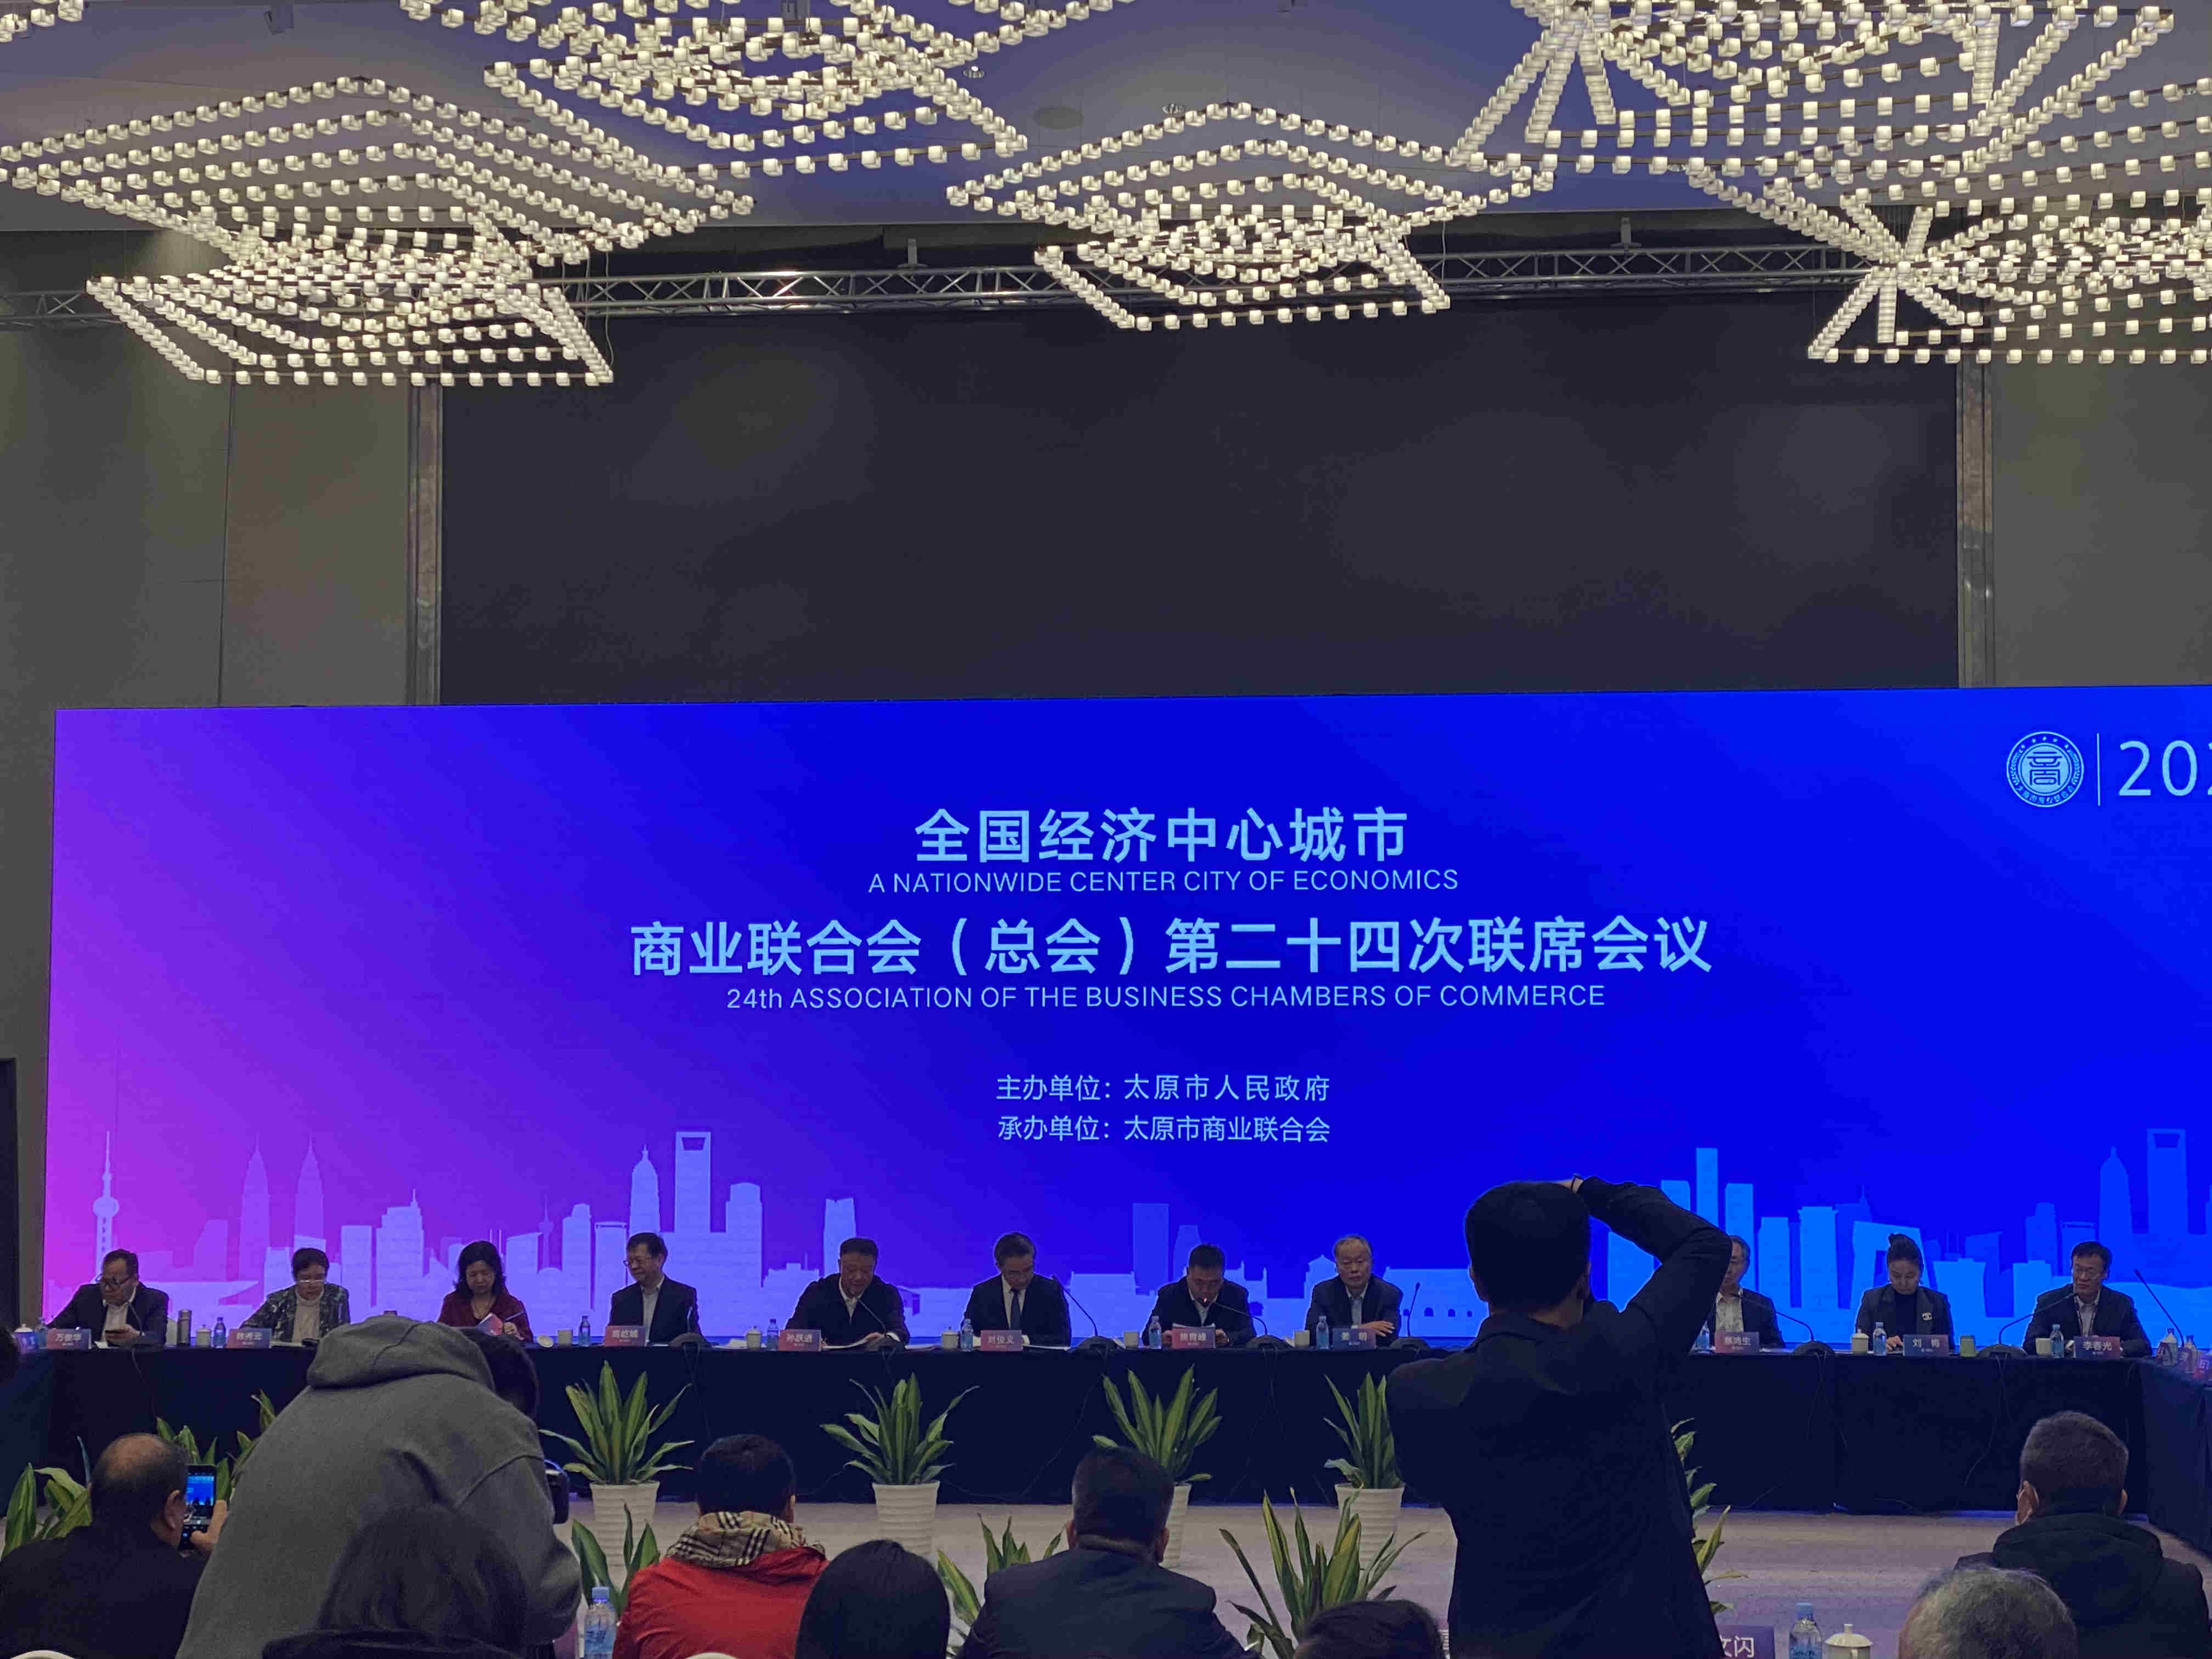 会长李中城出席全国经济中心城市商业联合会（总会）第二十四次联席会议